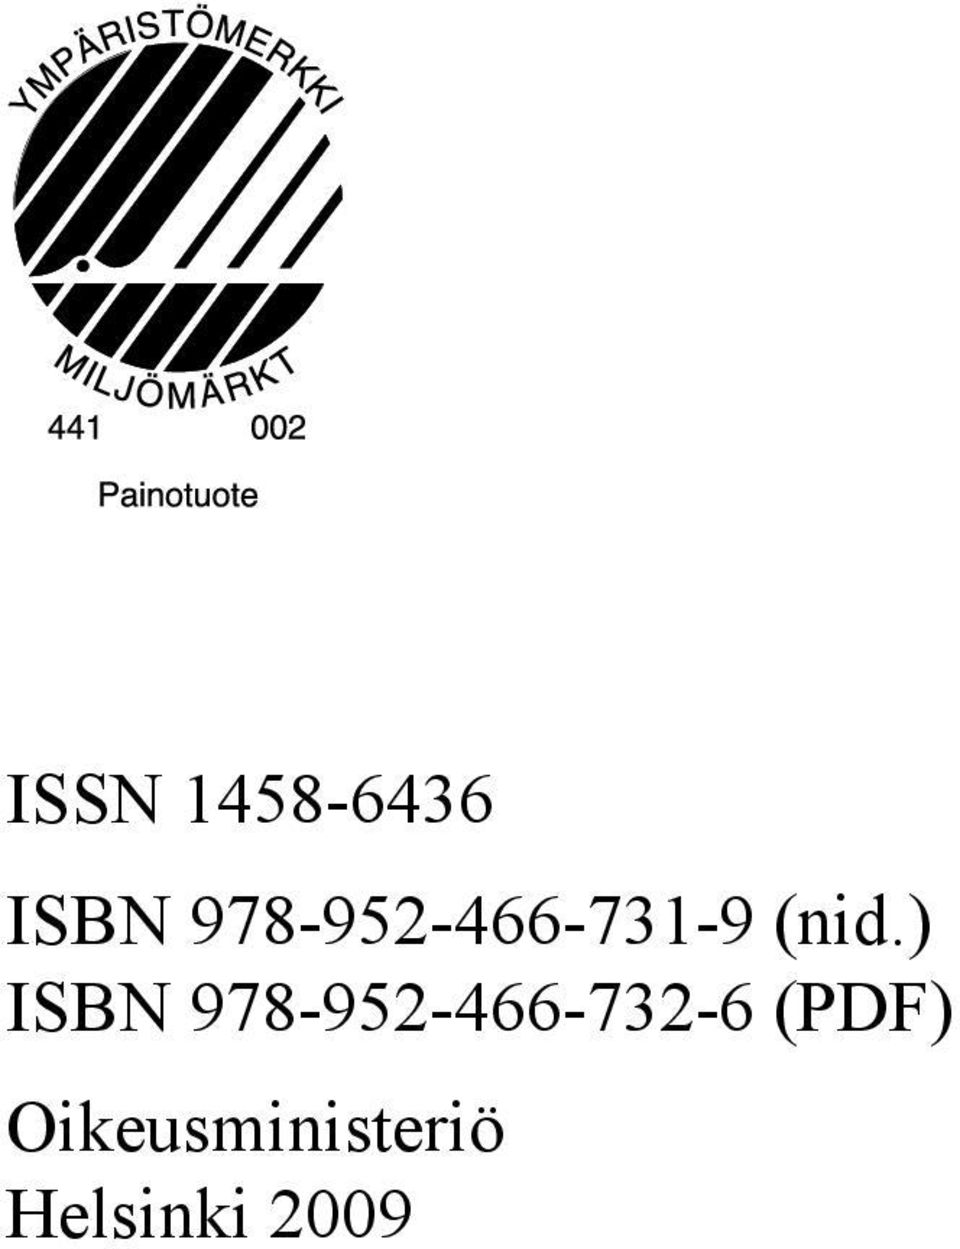 ) ISBN 978-952-466-732-6